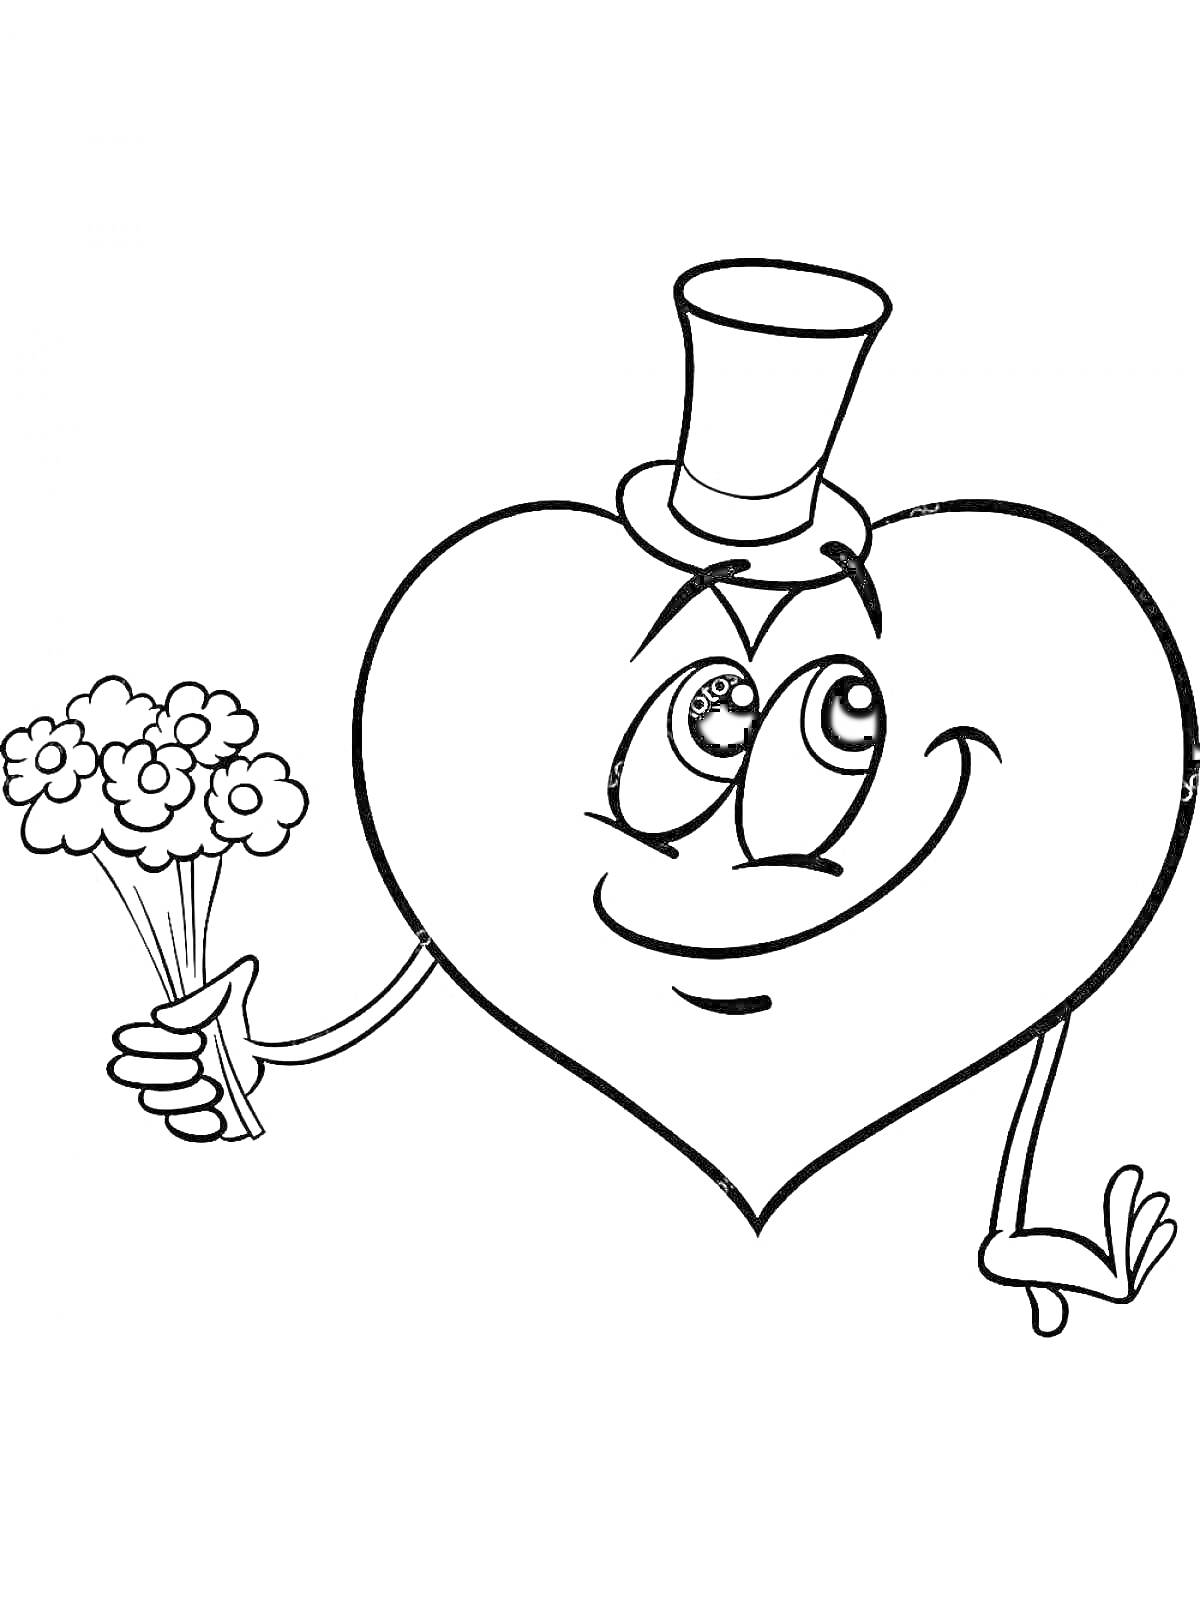 Раскраска Сердечко с букетом цветов и шляпой